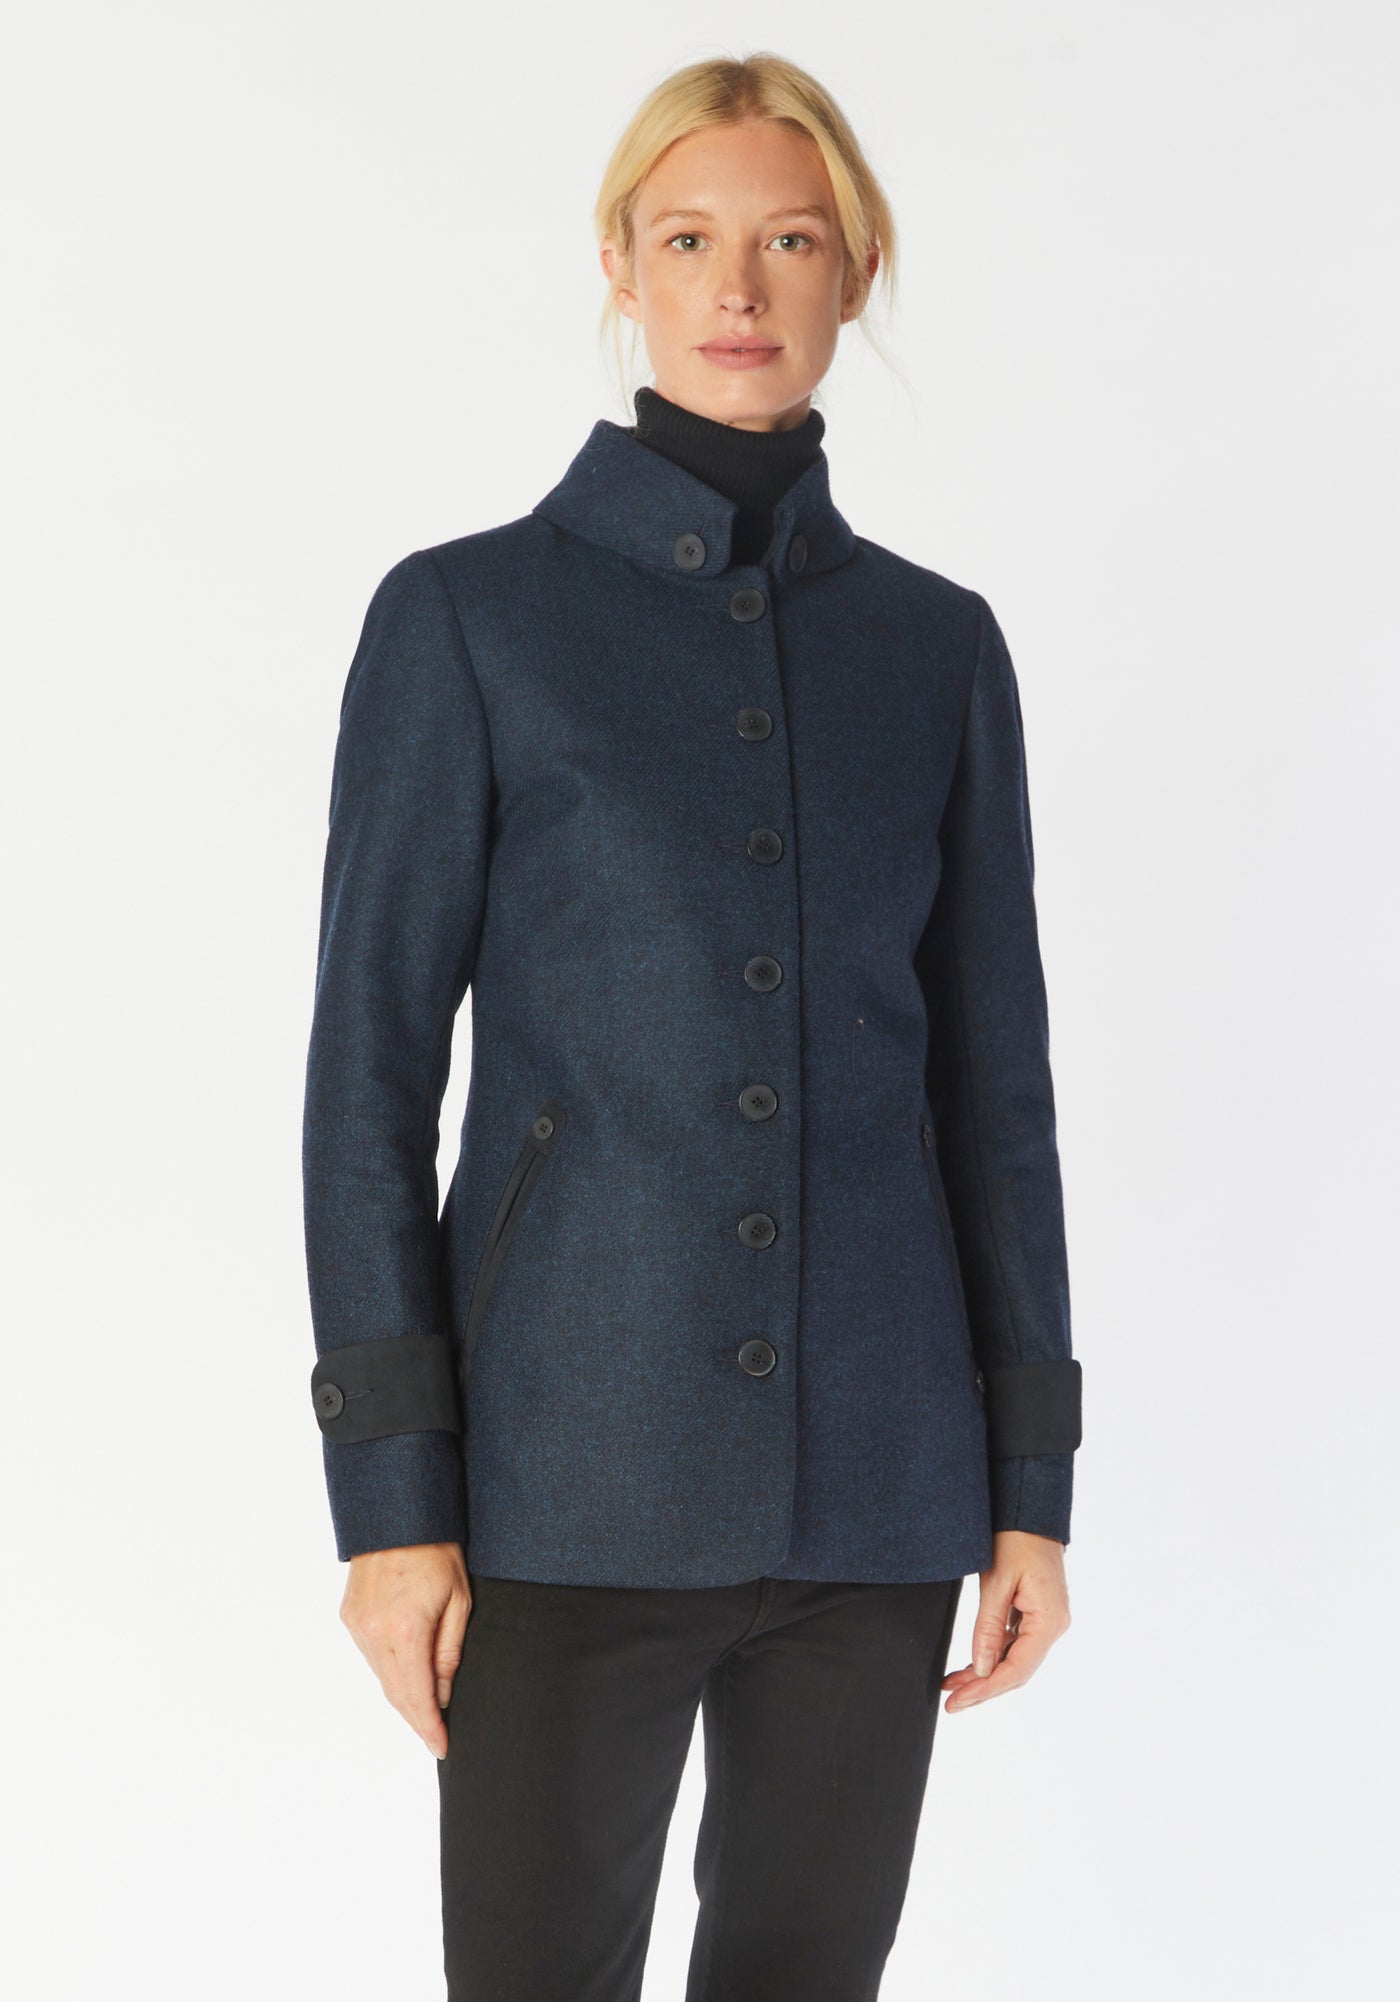 hendre jacket bright navy lambswool